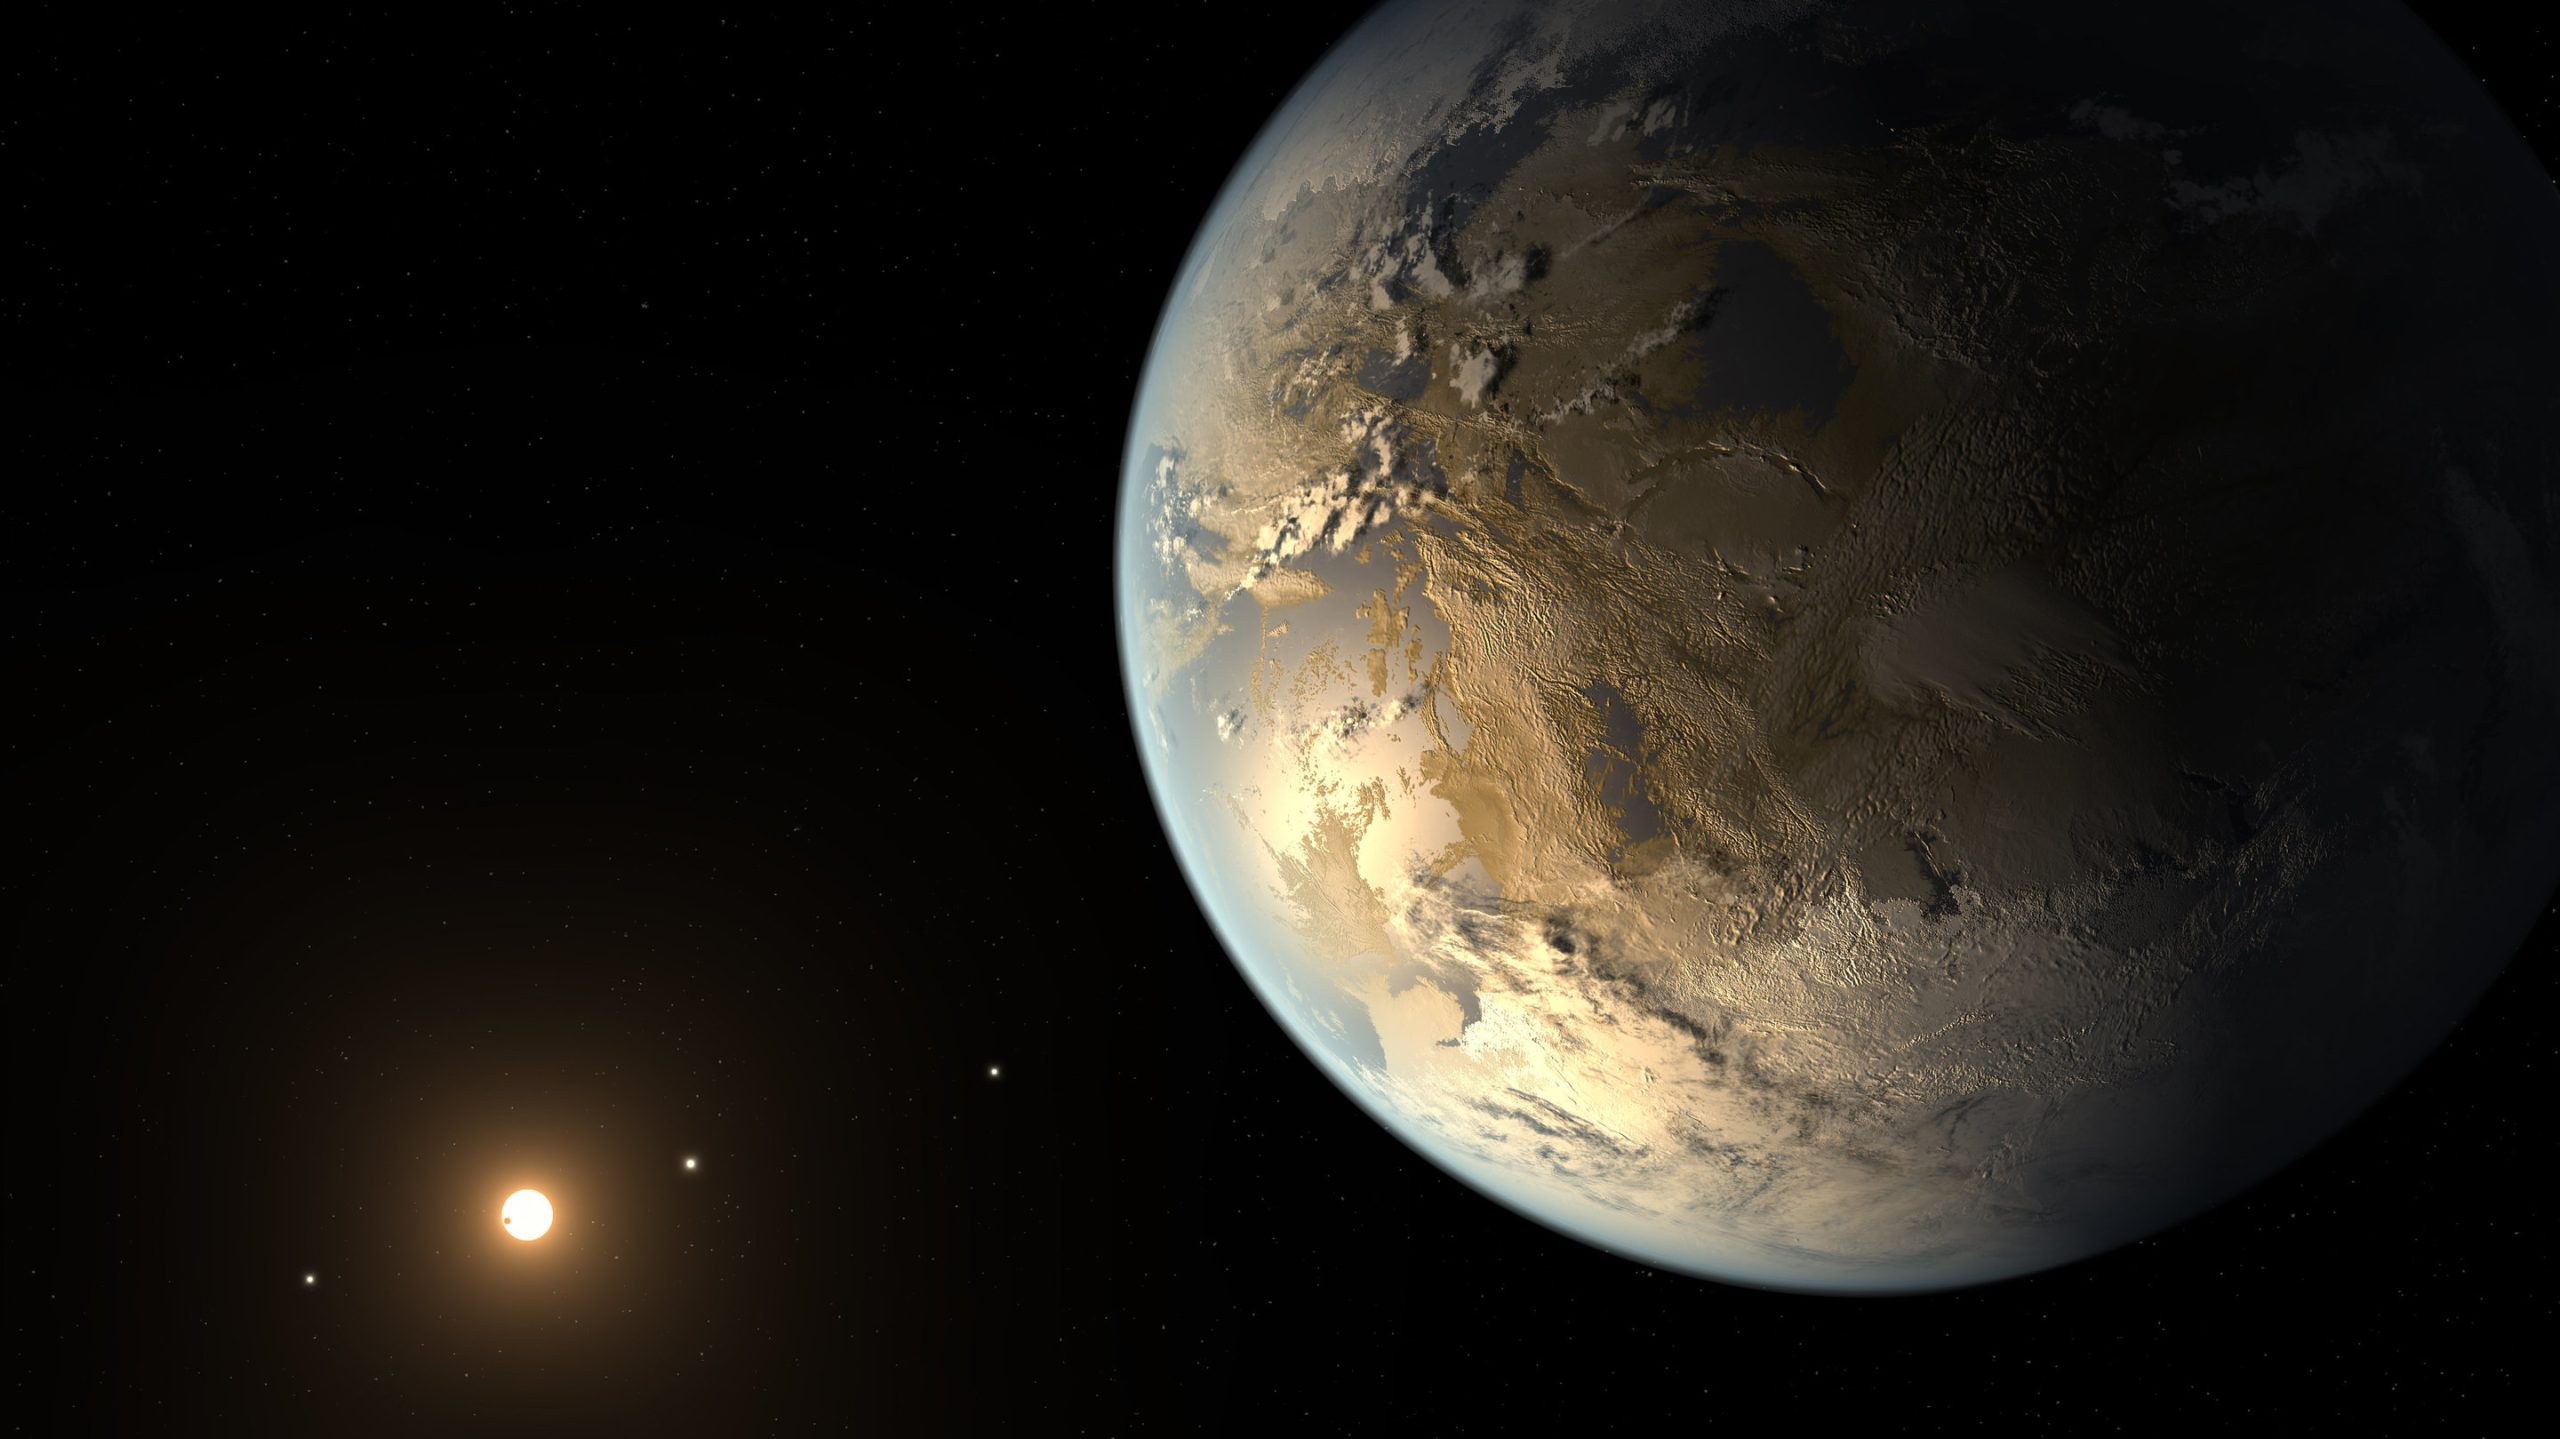 Νέα ανακάλυψη από επιστήμονες: Εντόπισαν εξωπλανήτη που φωτίζεται από τρείς ήλιους